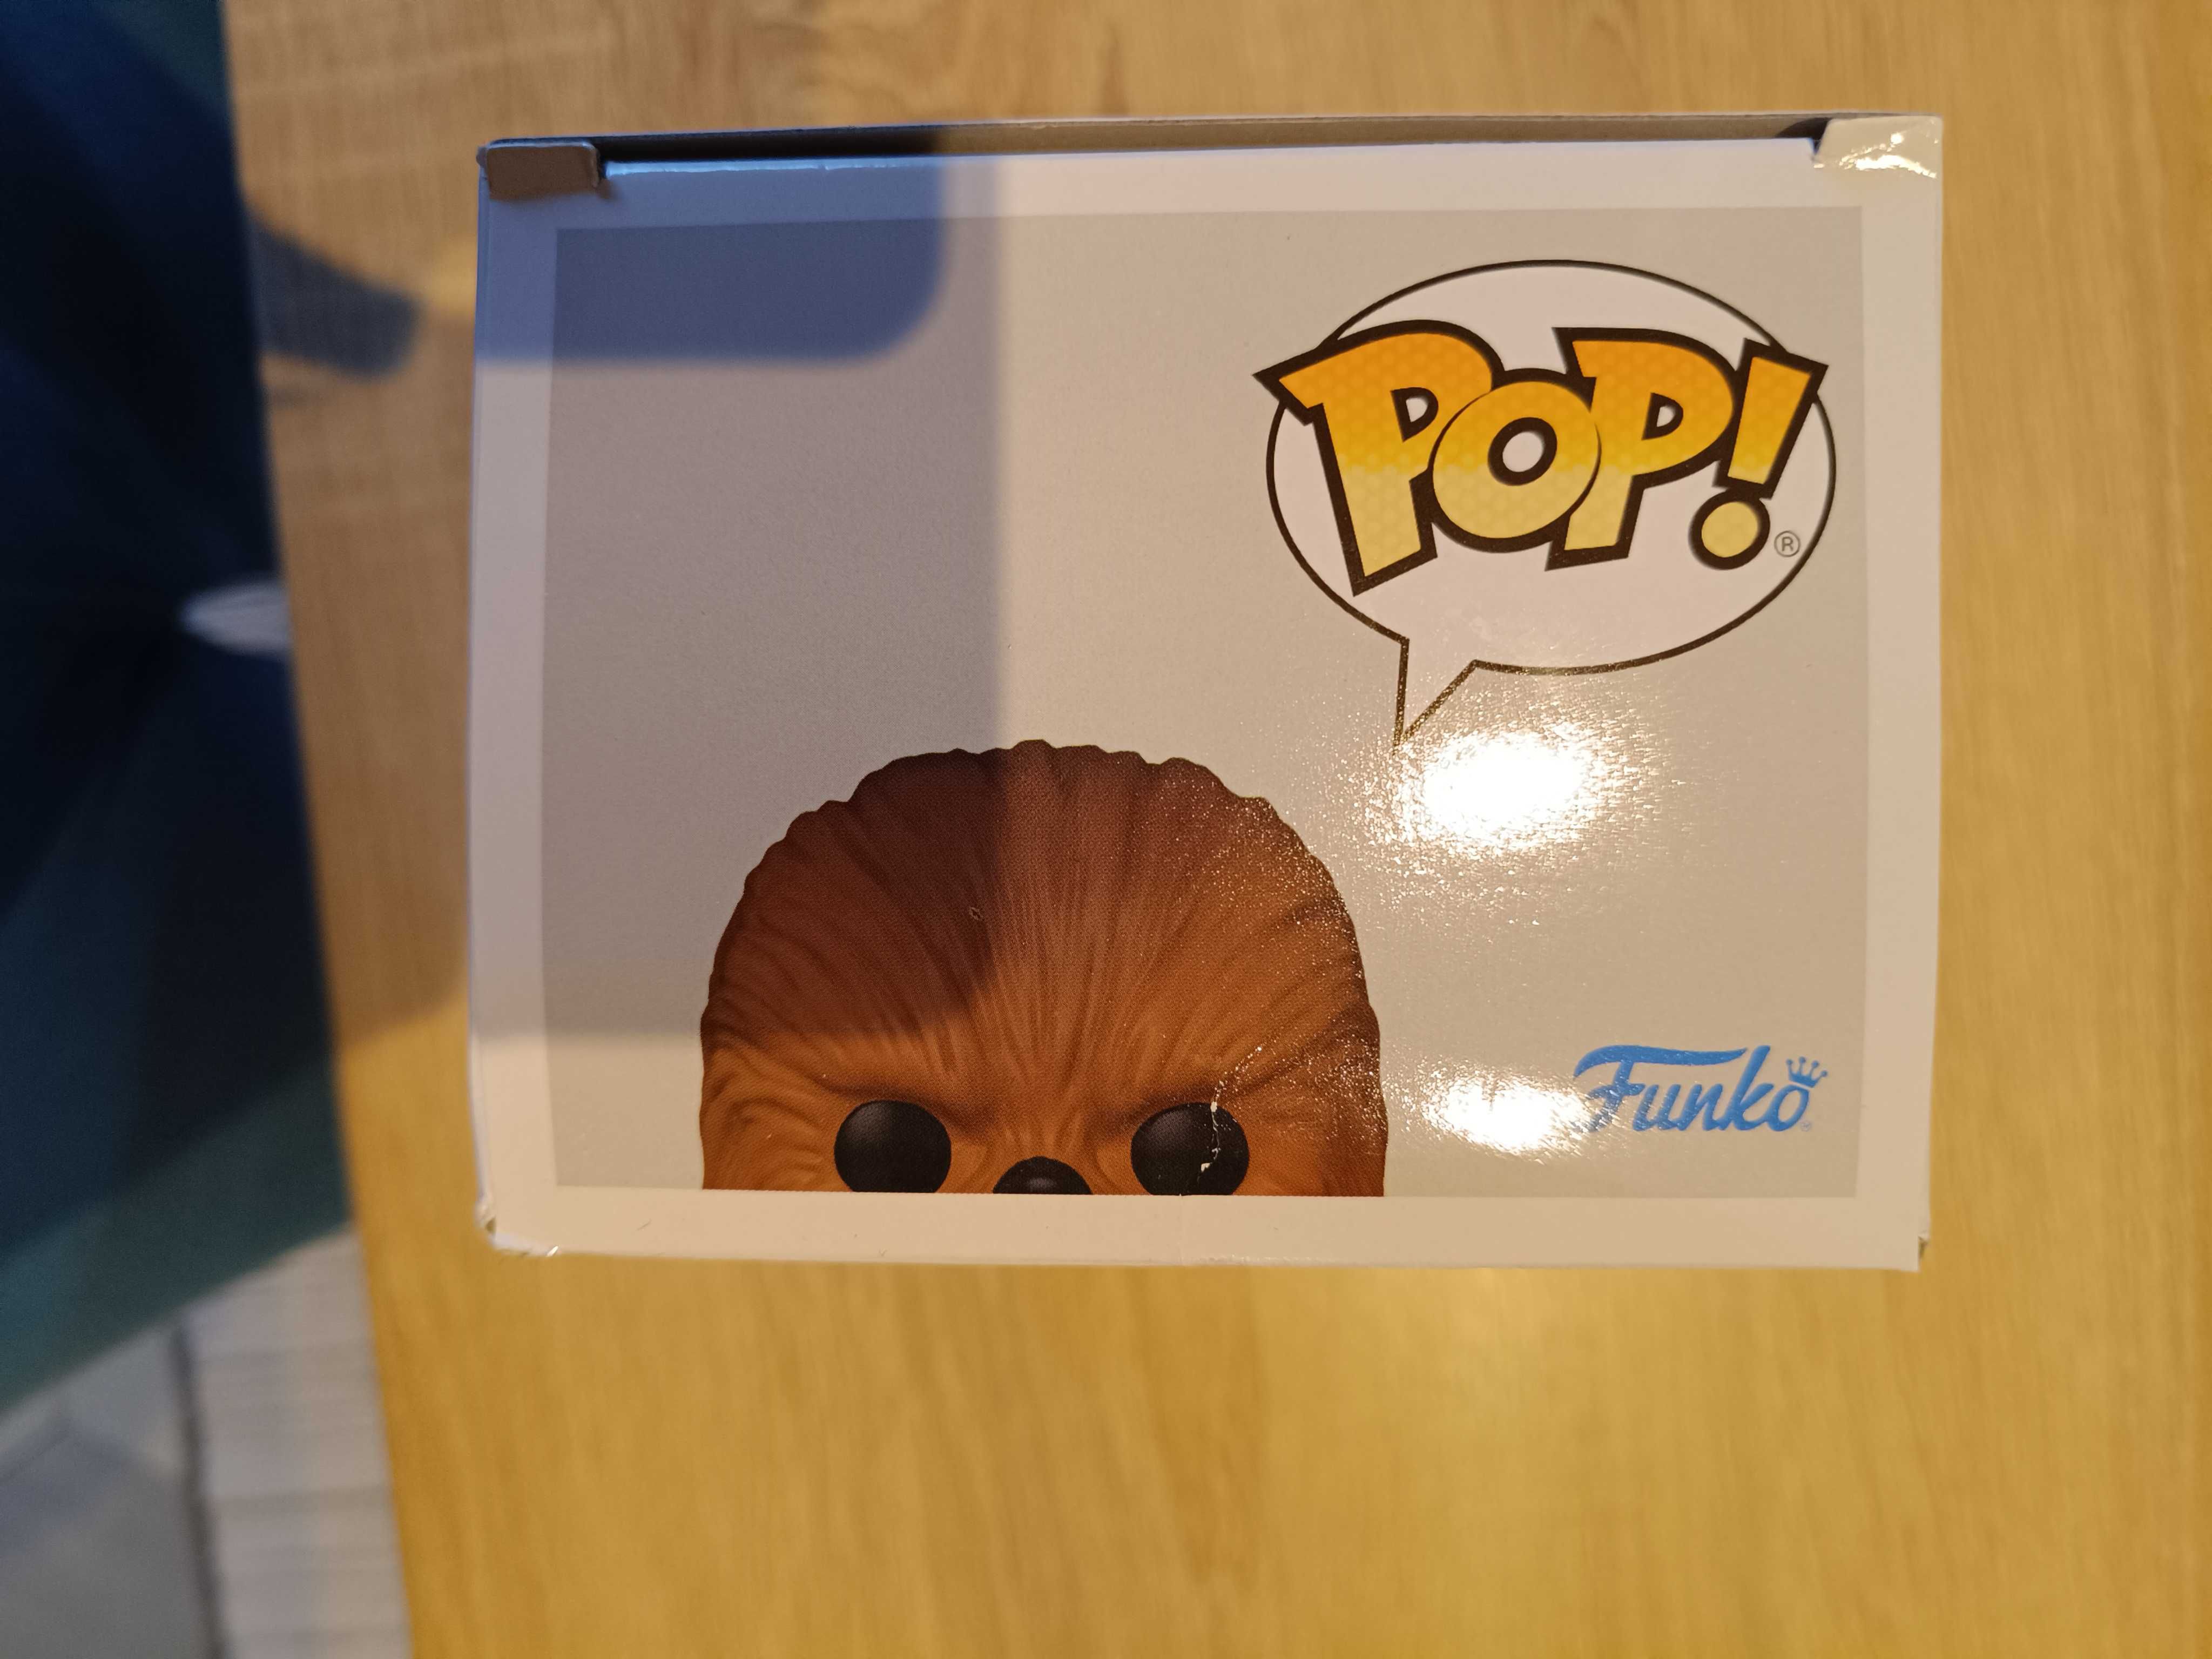 Figurka Pop Star Wars Chewbacca - nowa, nieodpakowana!